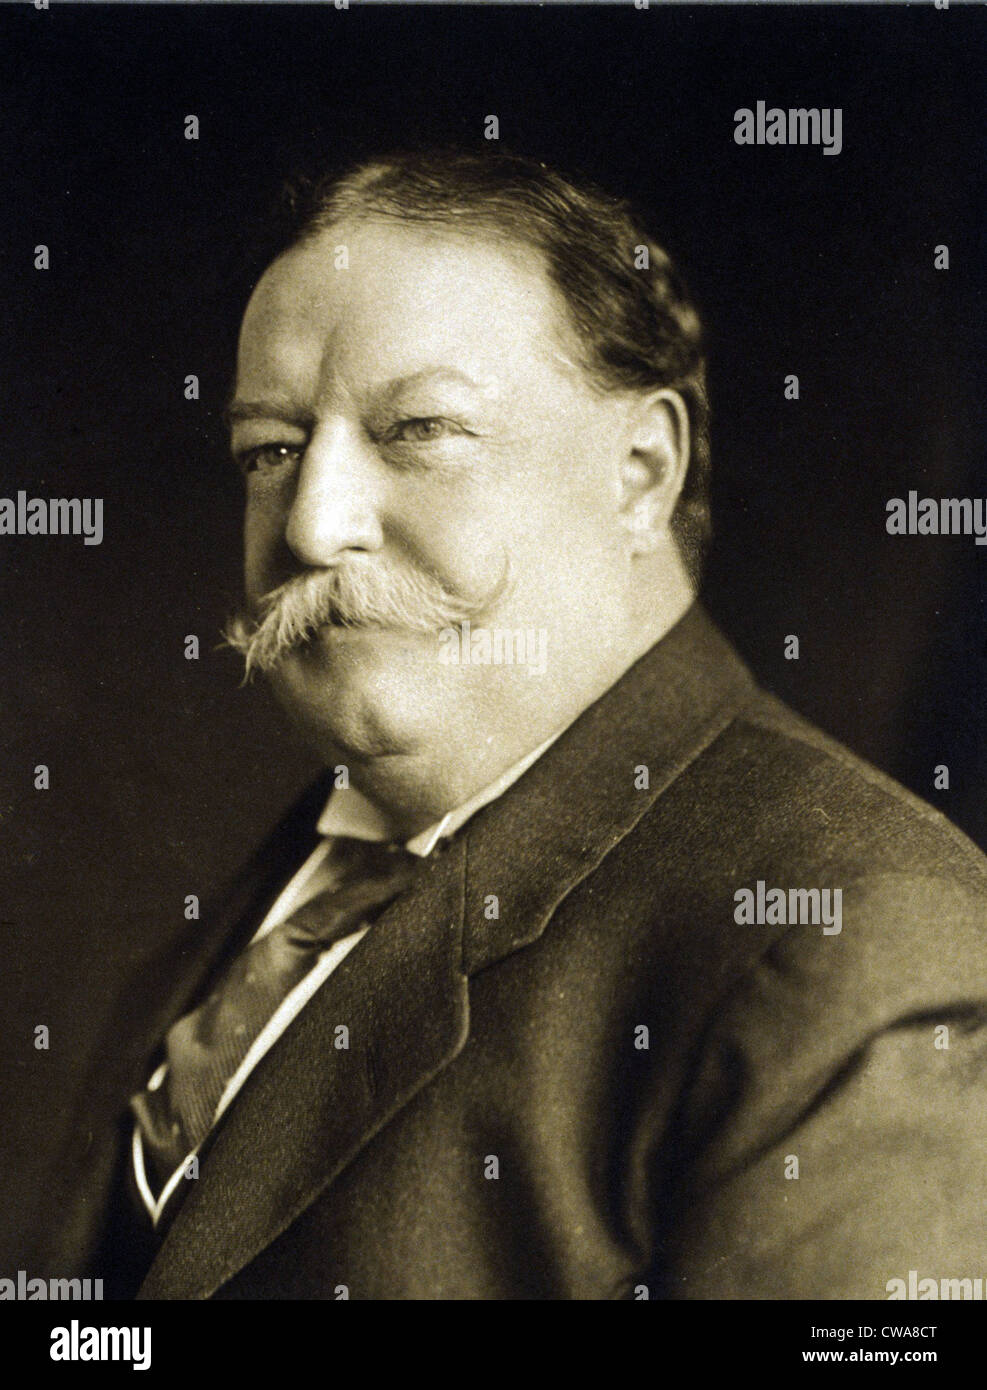 Il presidente William Taft (1857-1930) in un ritratto fatto il 11 marzo 1909, poco dopo il suo insediamento alla presidenza Usa. Foto Stock